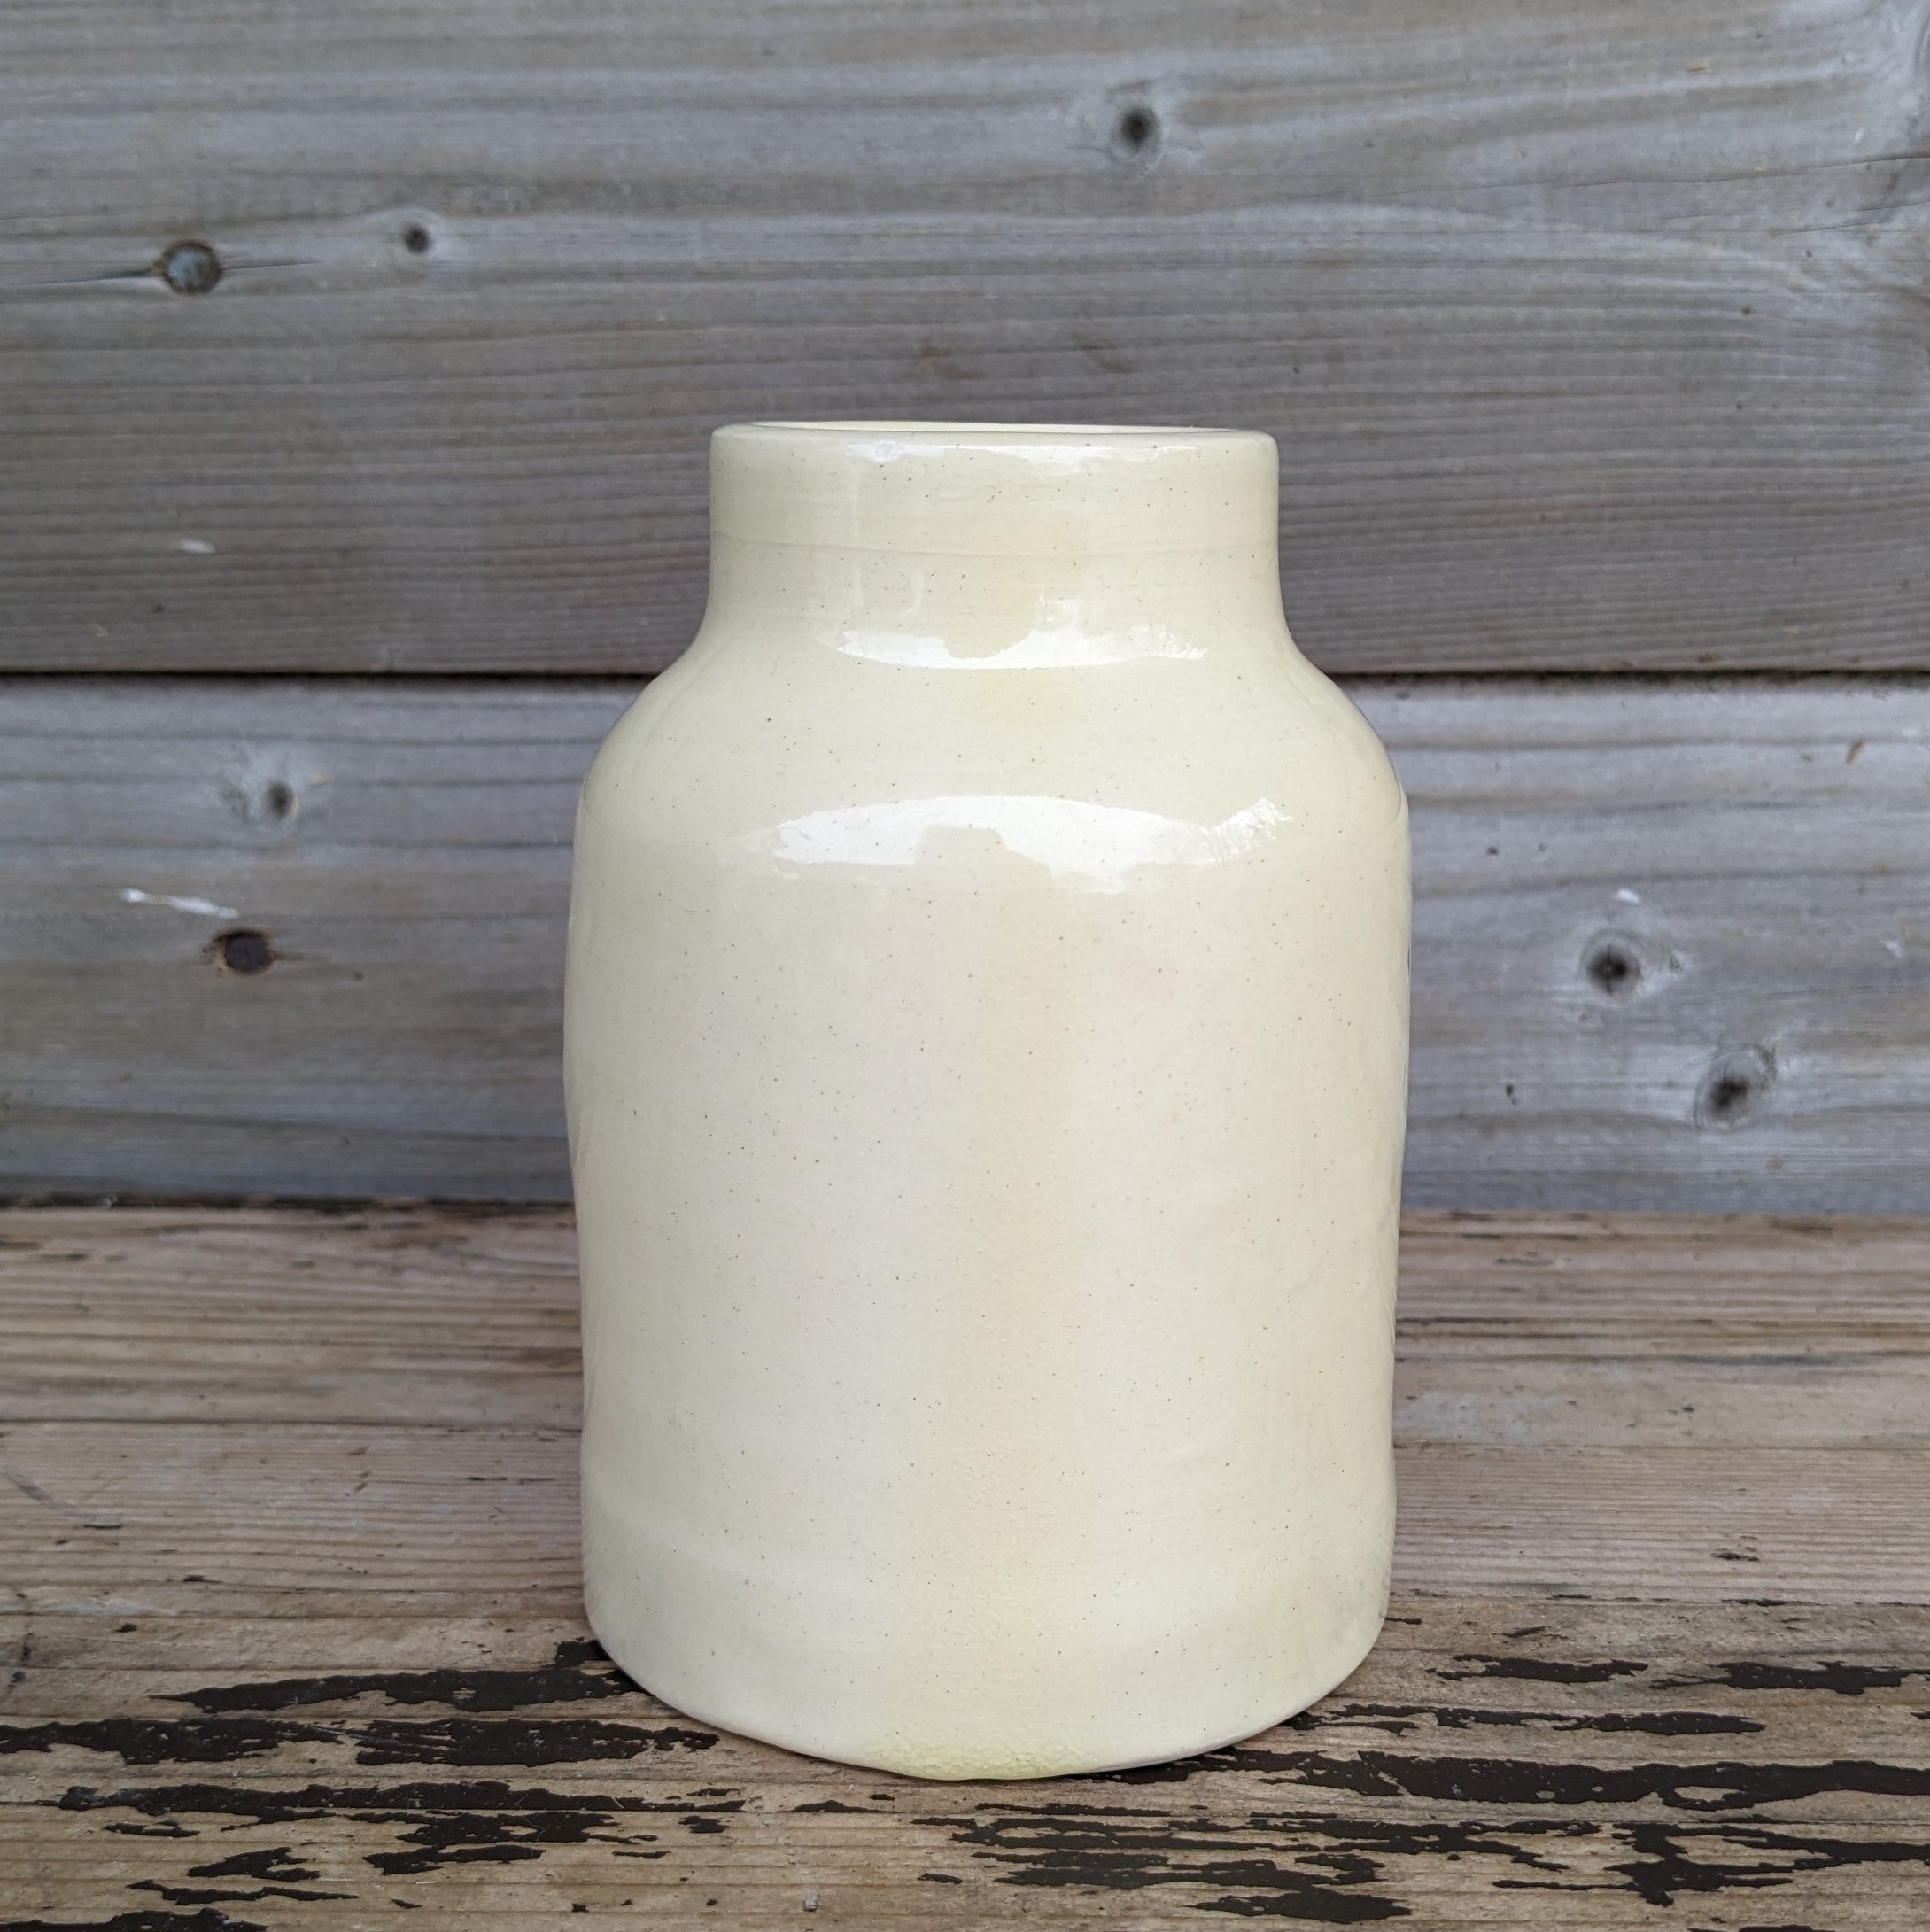 Lavender and Bee Milk Bottle Jug/Vase